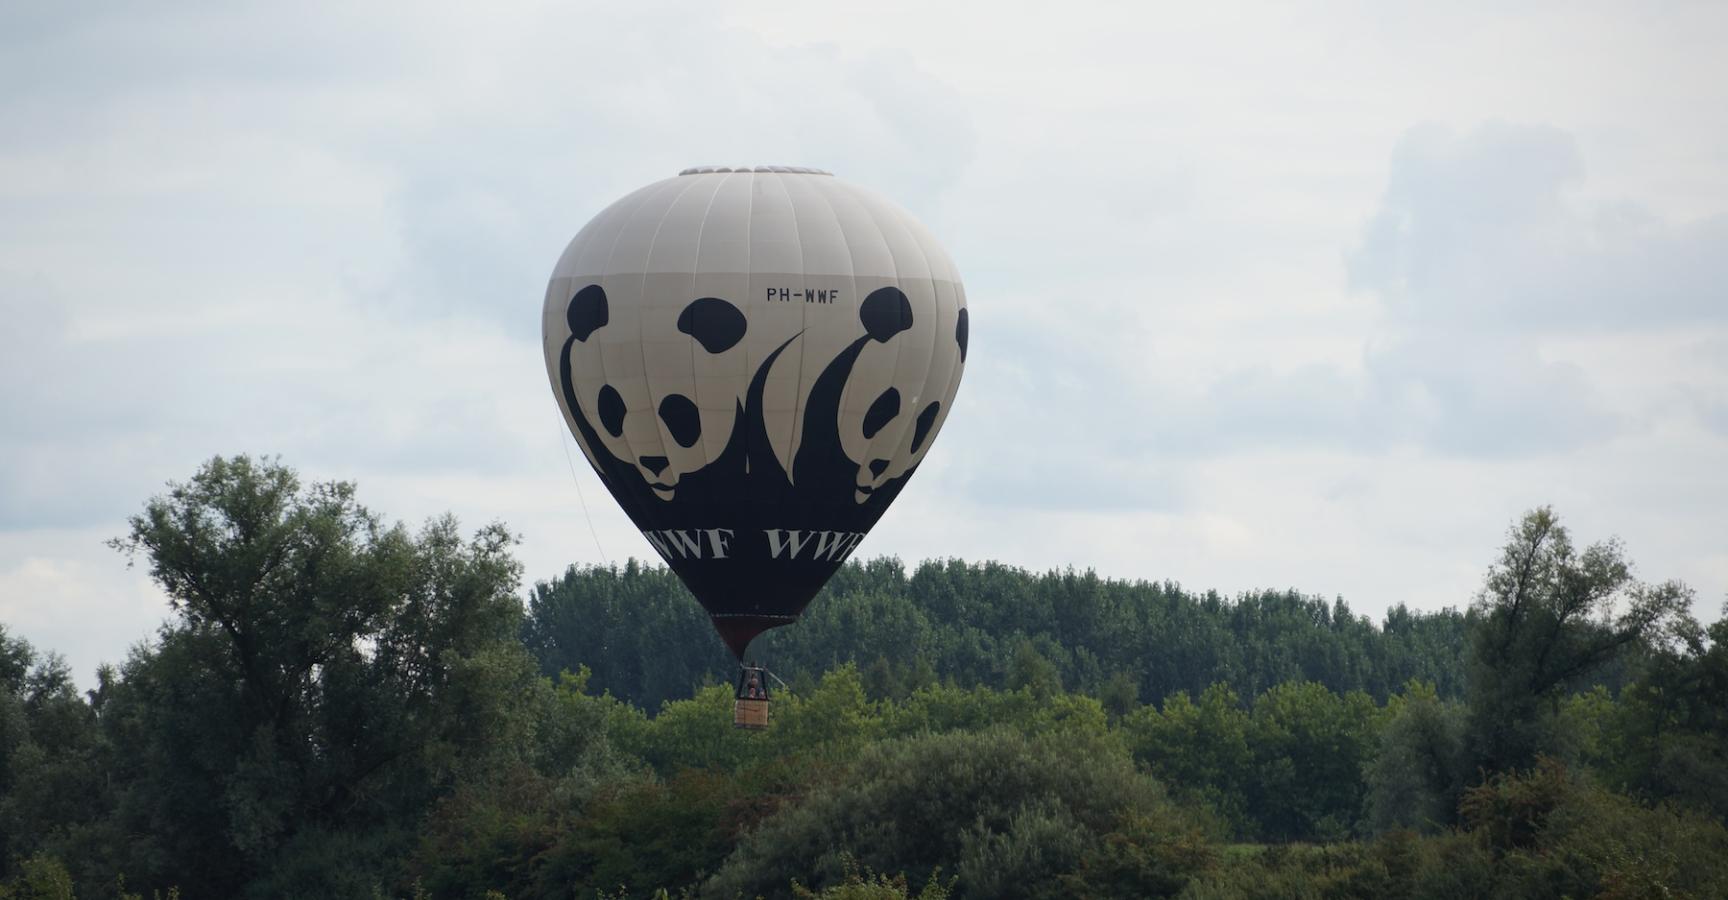 Wereld Natuur Fonds Ballon boven de Millingerwaard